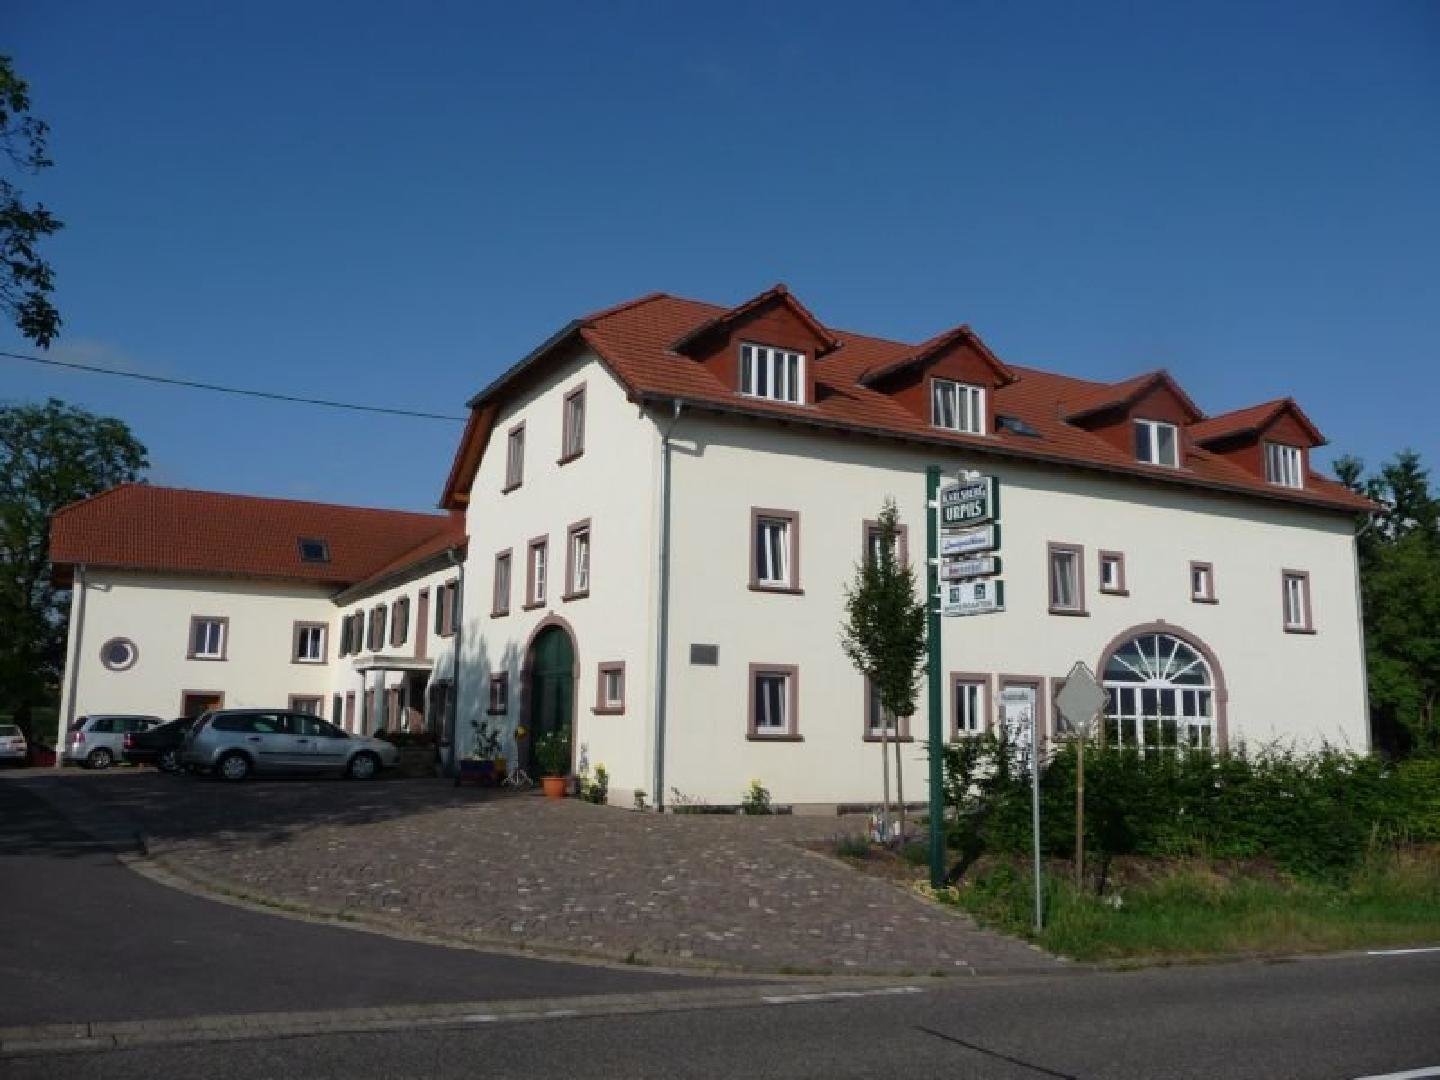 4 Tage Wander-Erlebnis Traumschleifen an Saar  Mosel – Hotel Sonnenhof  (3 Sterne) in Perl, Saarland inkl. Halbpension